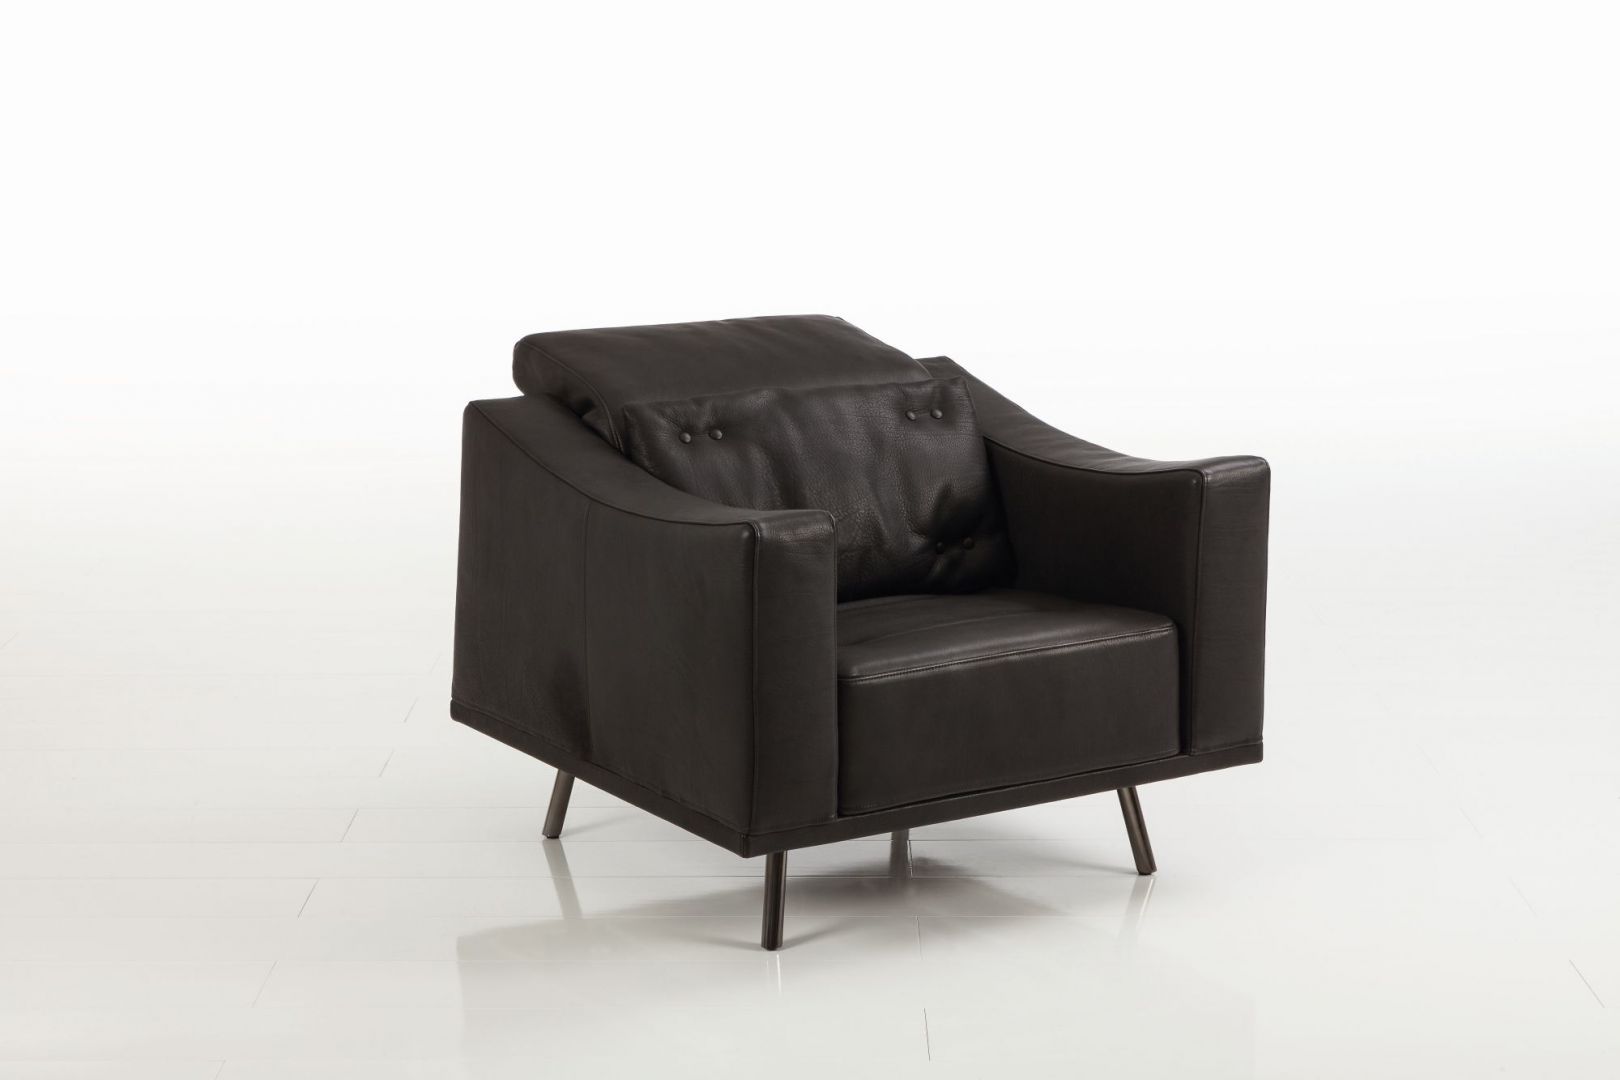 Fotel Deep Space. Wysuwane siedziska i podnoszone oparcia dają indywidualny komfort siedzenia i relaksu. Fot. Brühl